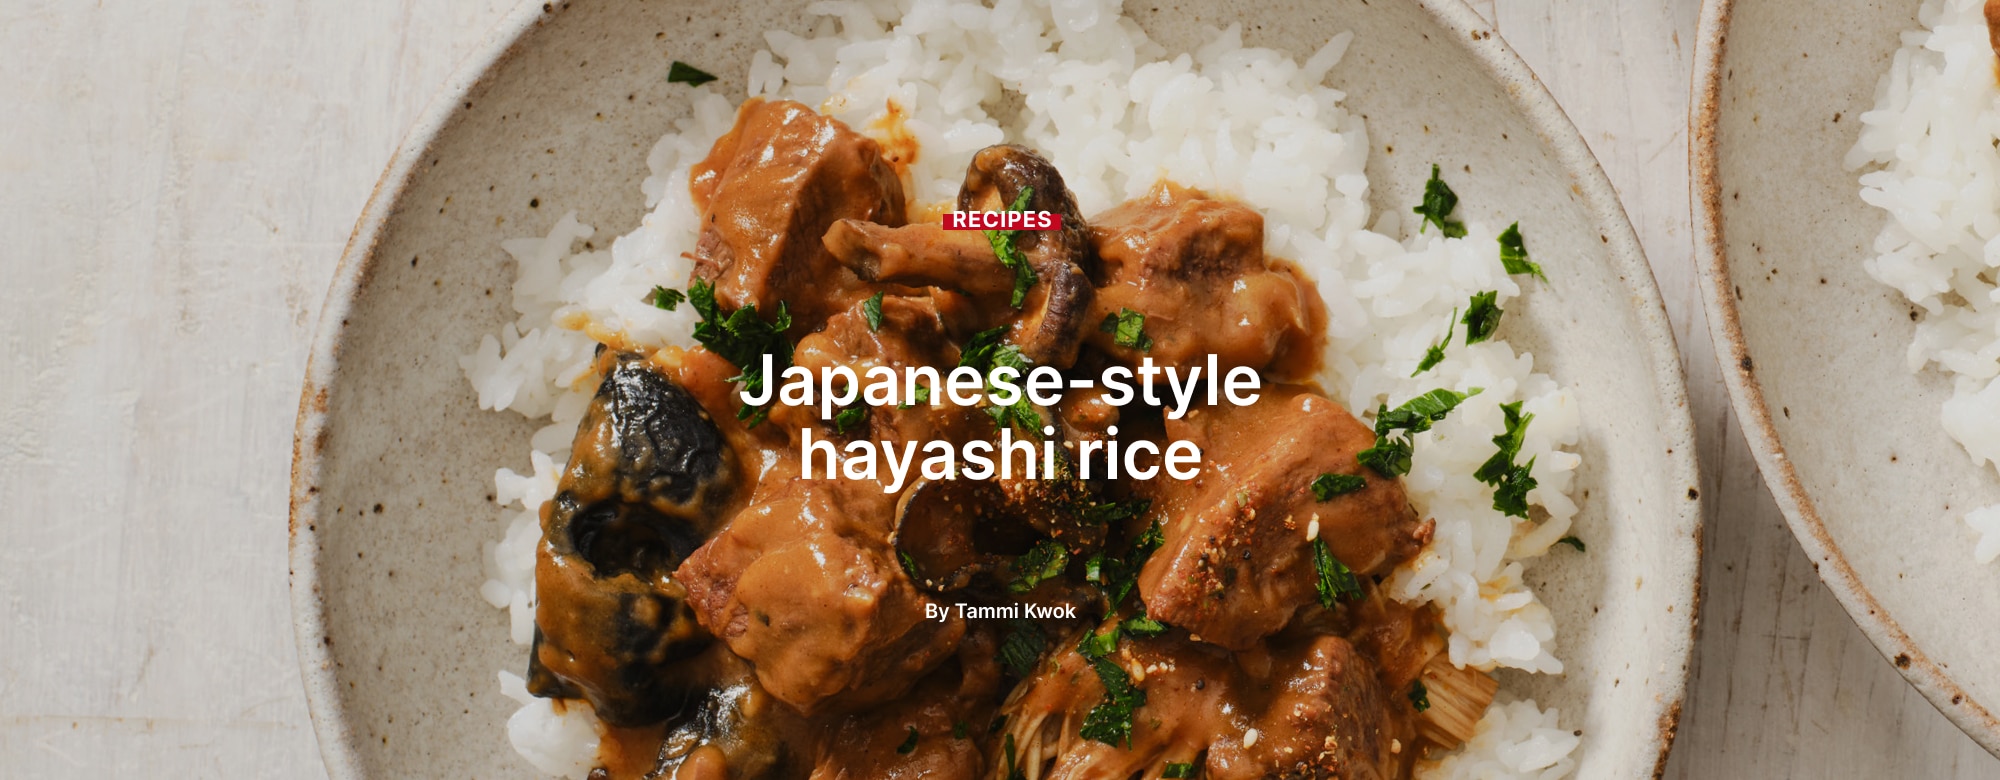 Japanese-style hayashi rice